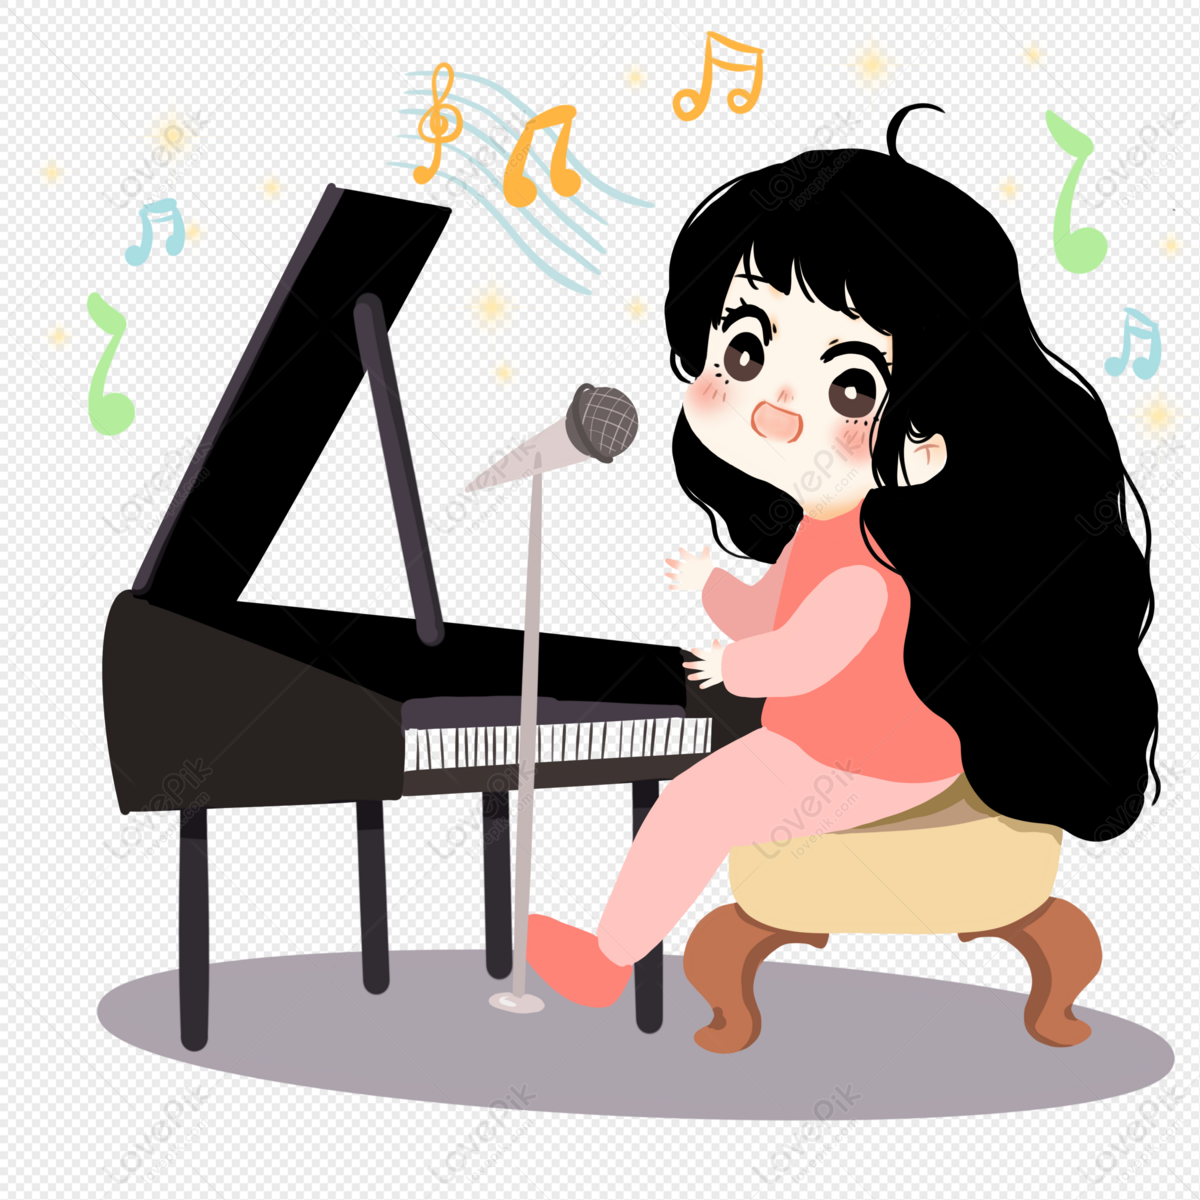 Фортепиано мультяшная. Девочка играет на фортепиано рисунок. Иллюстрация с пианино девочка. Девочка играет на пианино мультяшки.